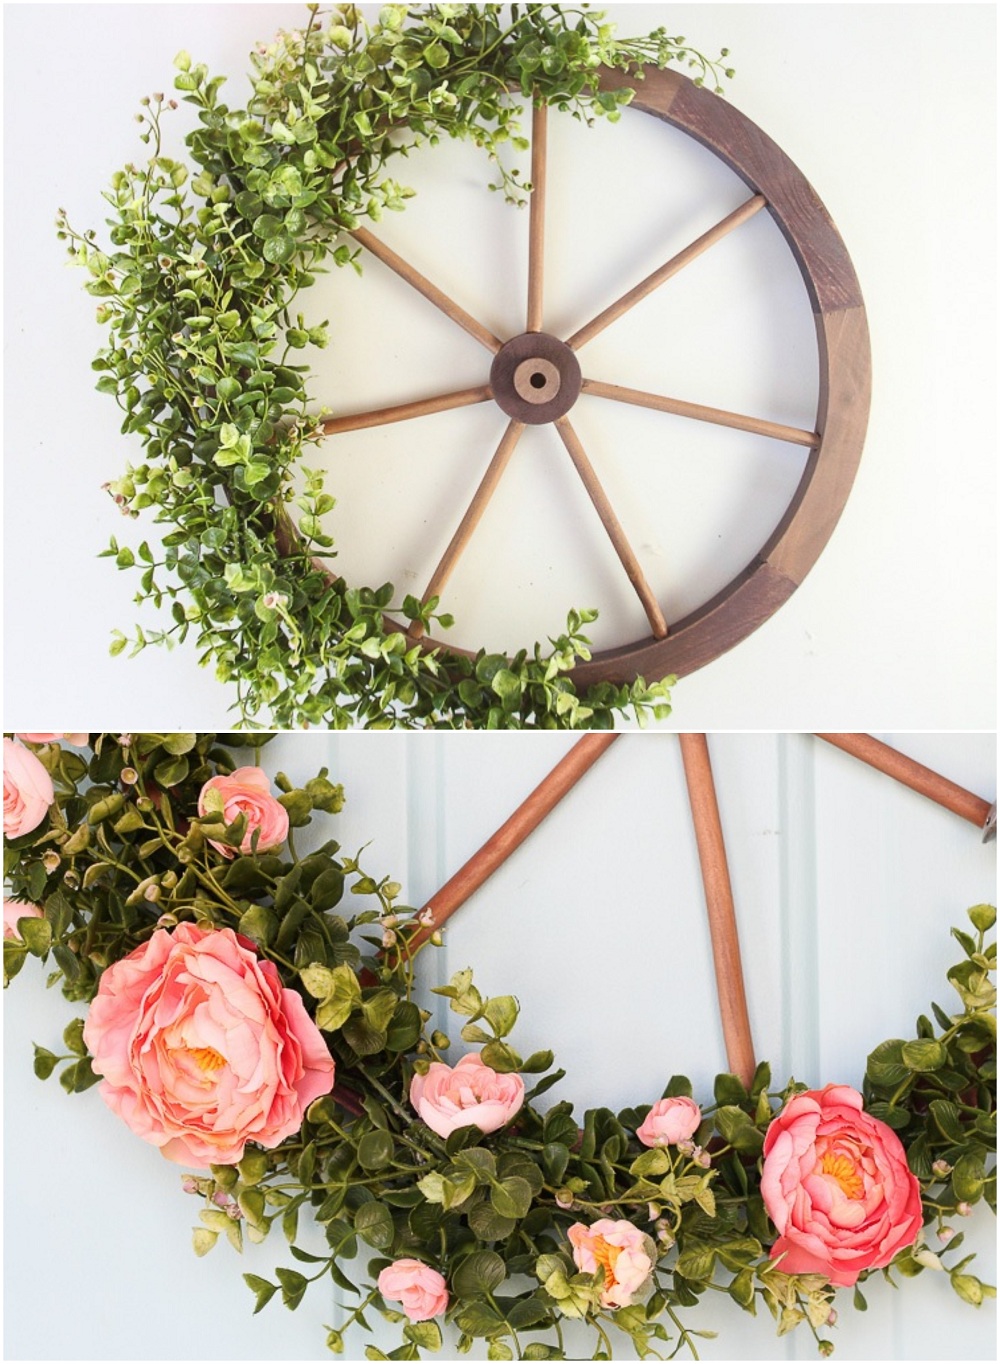 décoration été DIY roue de wagon eucalyptus et fleurs roses